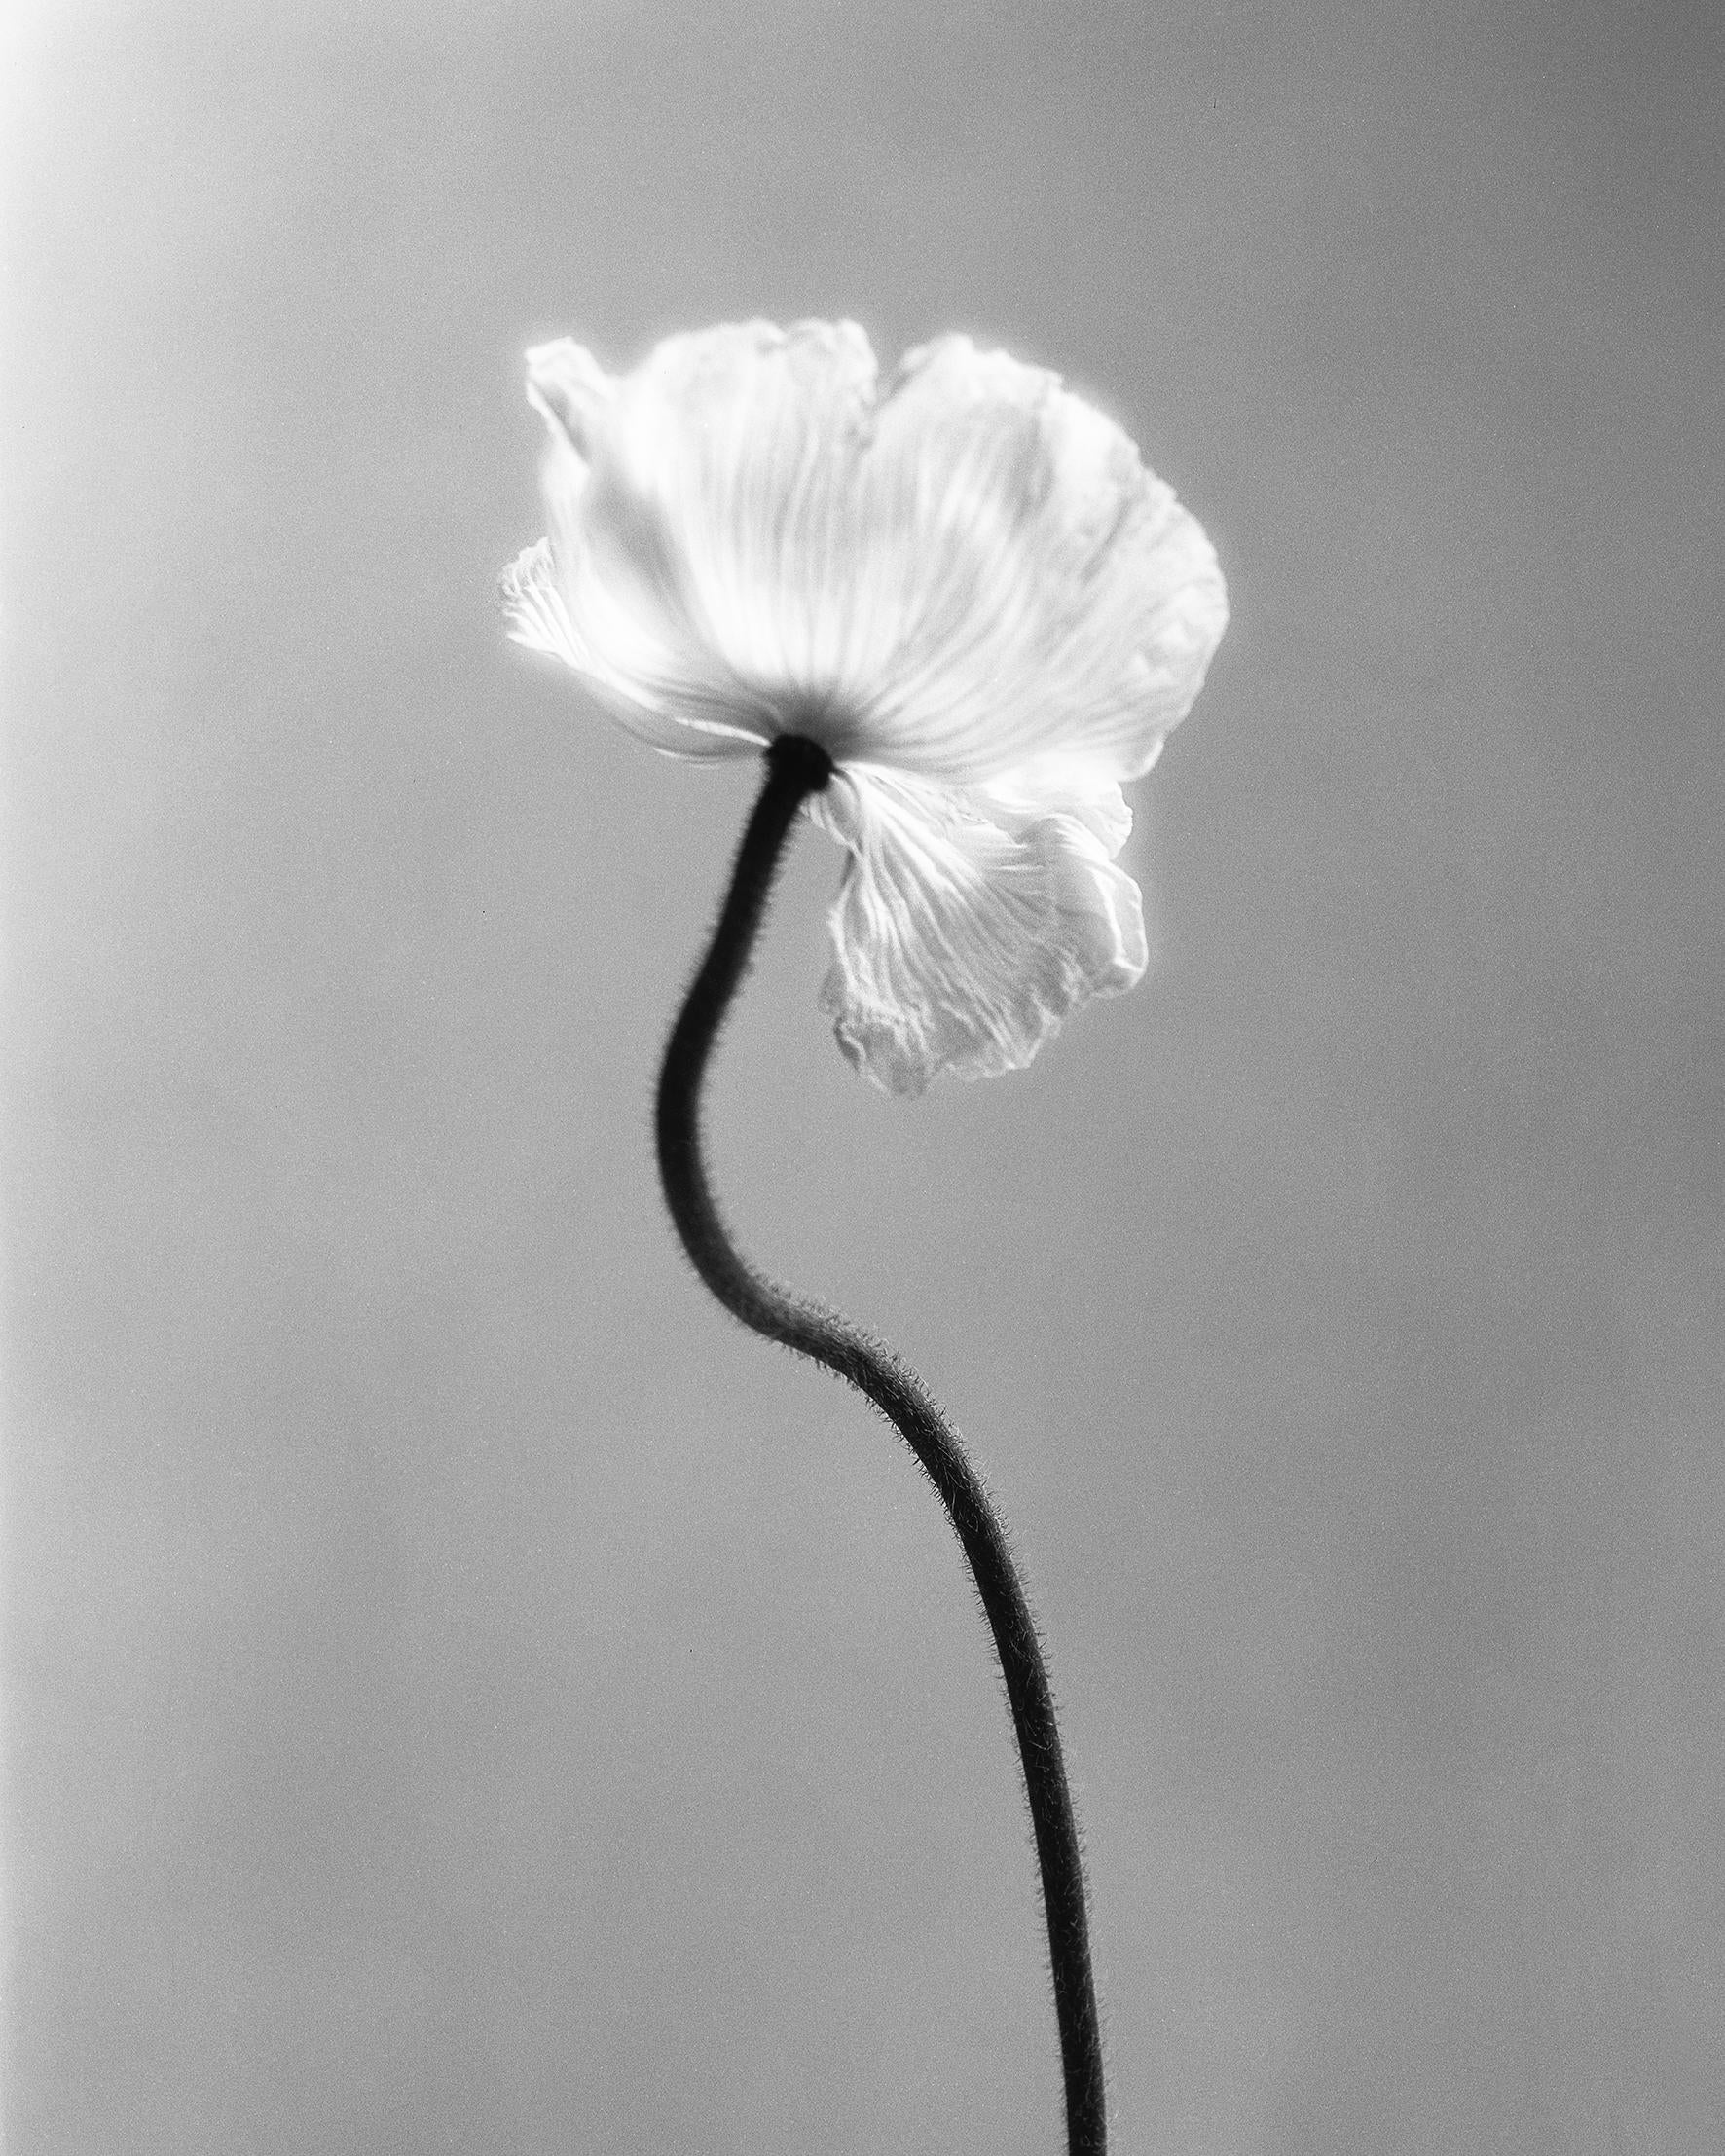 Ugne Pouwell Still-Life Photograph – Mohnblumen Nr.3 – Analogue Schwarz-Weiß-Blumenfotografie, limitierte Auflage von 15 Stück